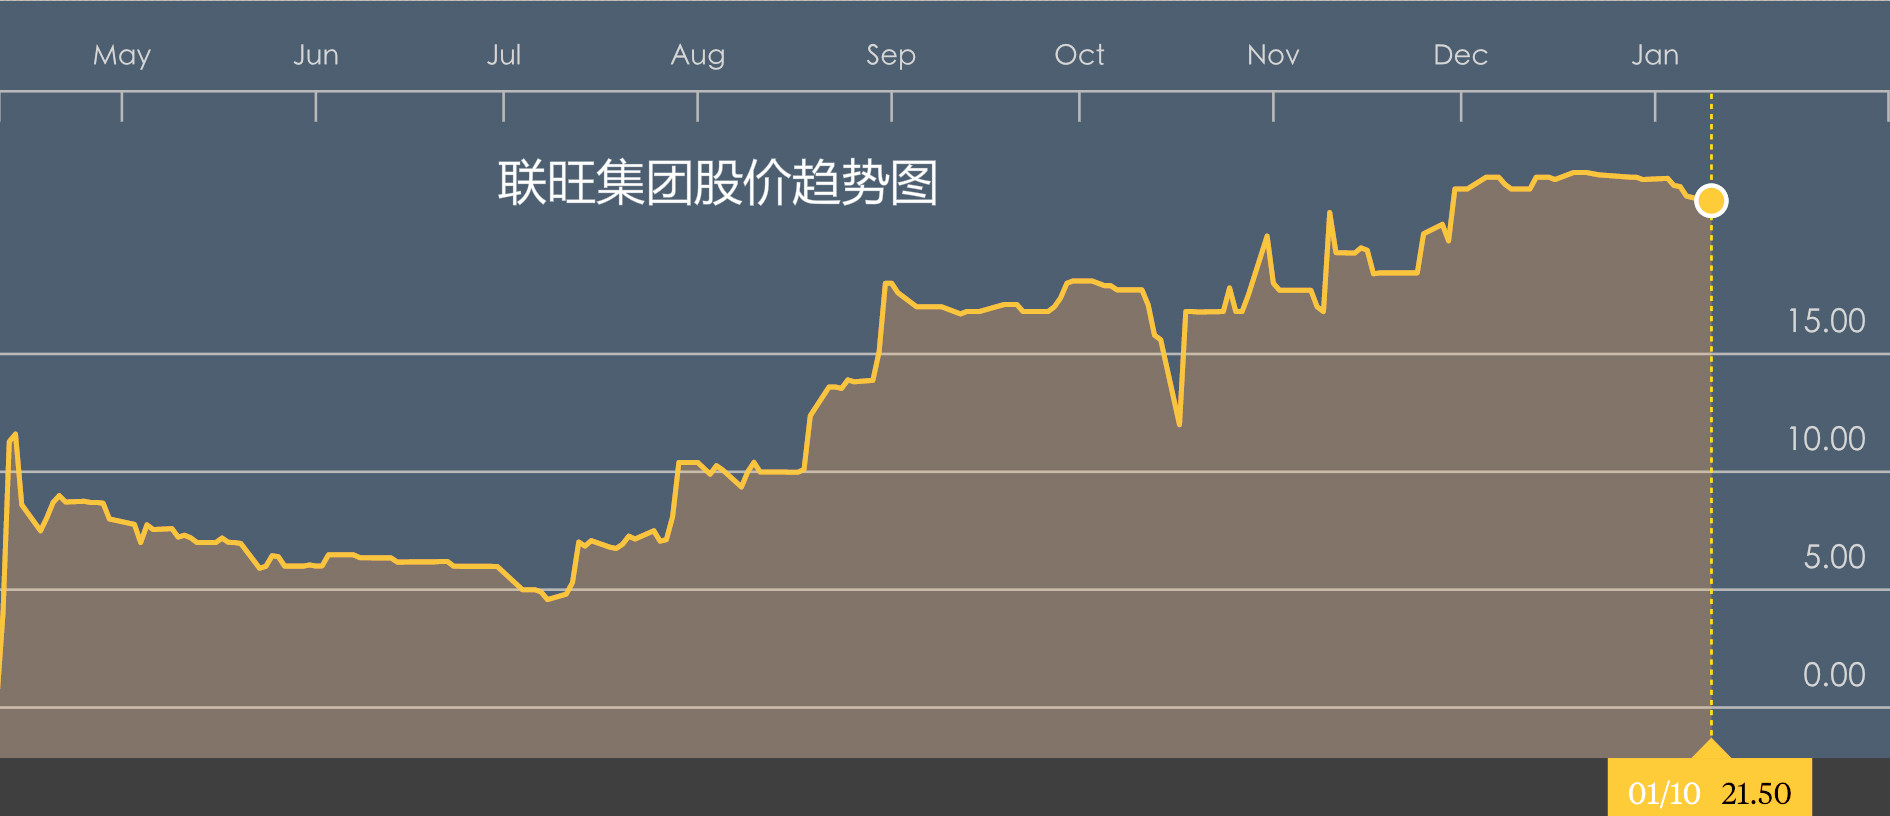 联旺集团股价趋势图.jpg